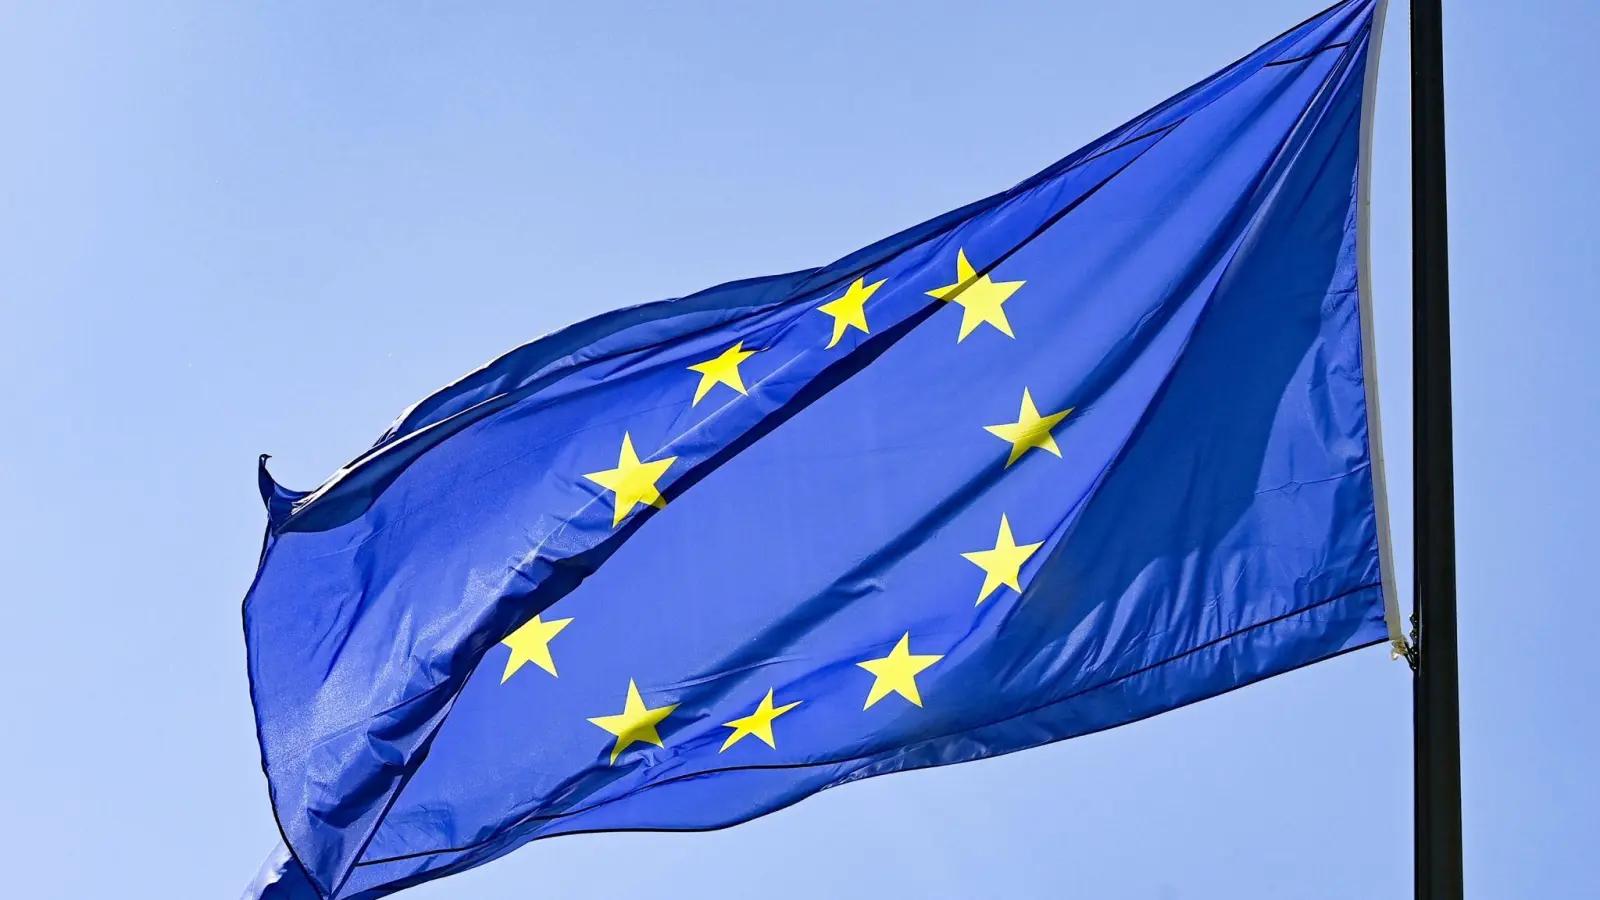 Die Flagge der EU: Um sich von fossilen Brennstoffen aus Russland zu lösen und lieber in erneuerbare Energien zu investieren, werden Gelder neu geordnet. (Foto: Jens Kalaene/dpa-Zentralbild/dpa)